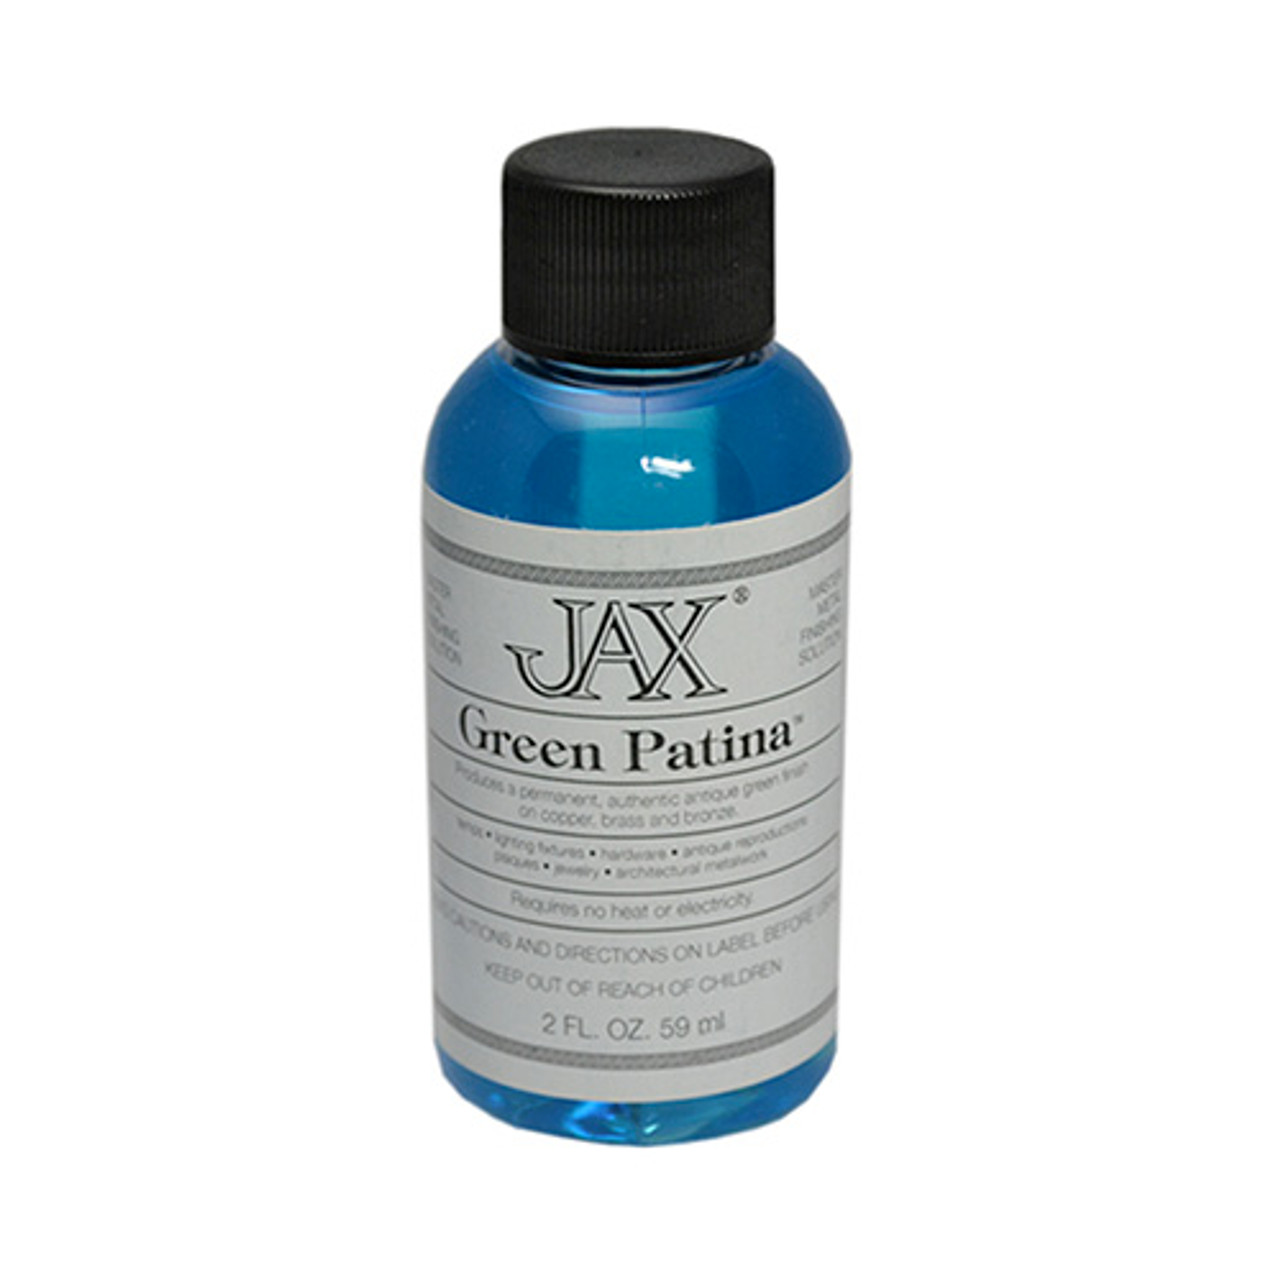 JAX Green Patina - 1 Pint Bottle